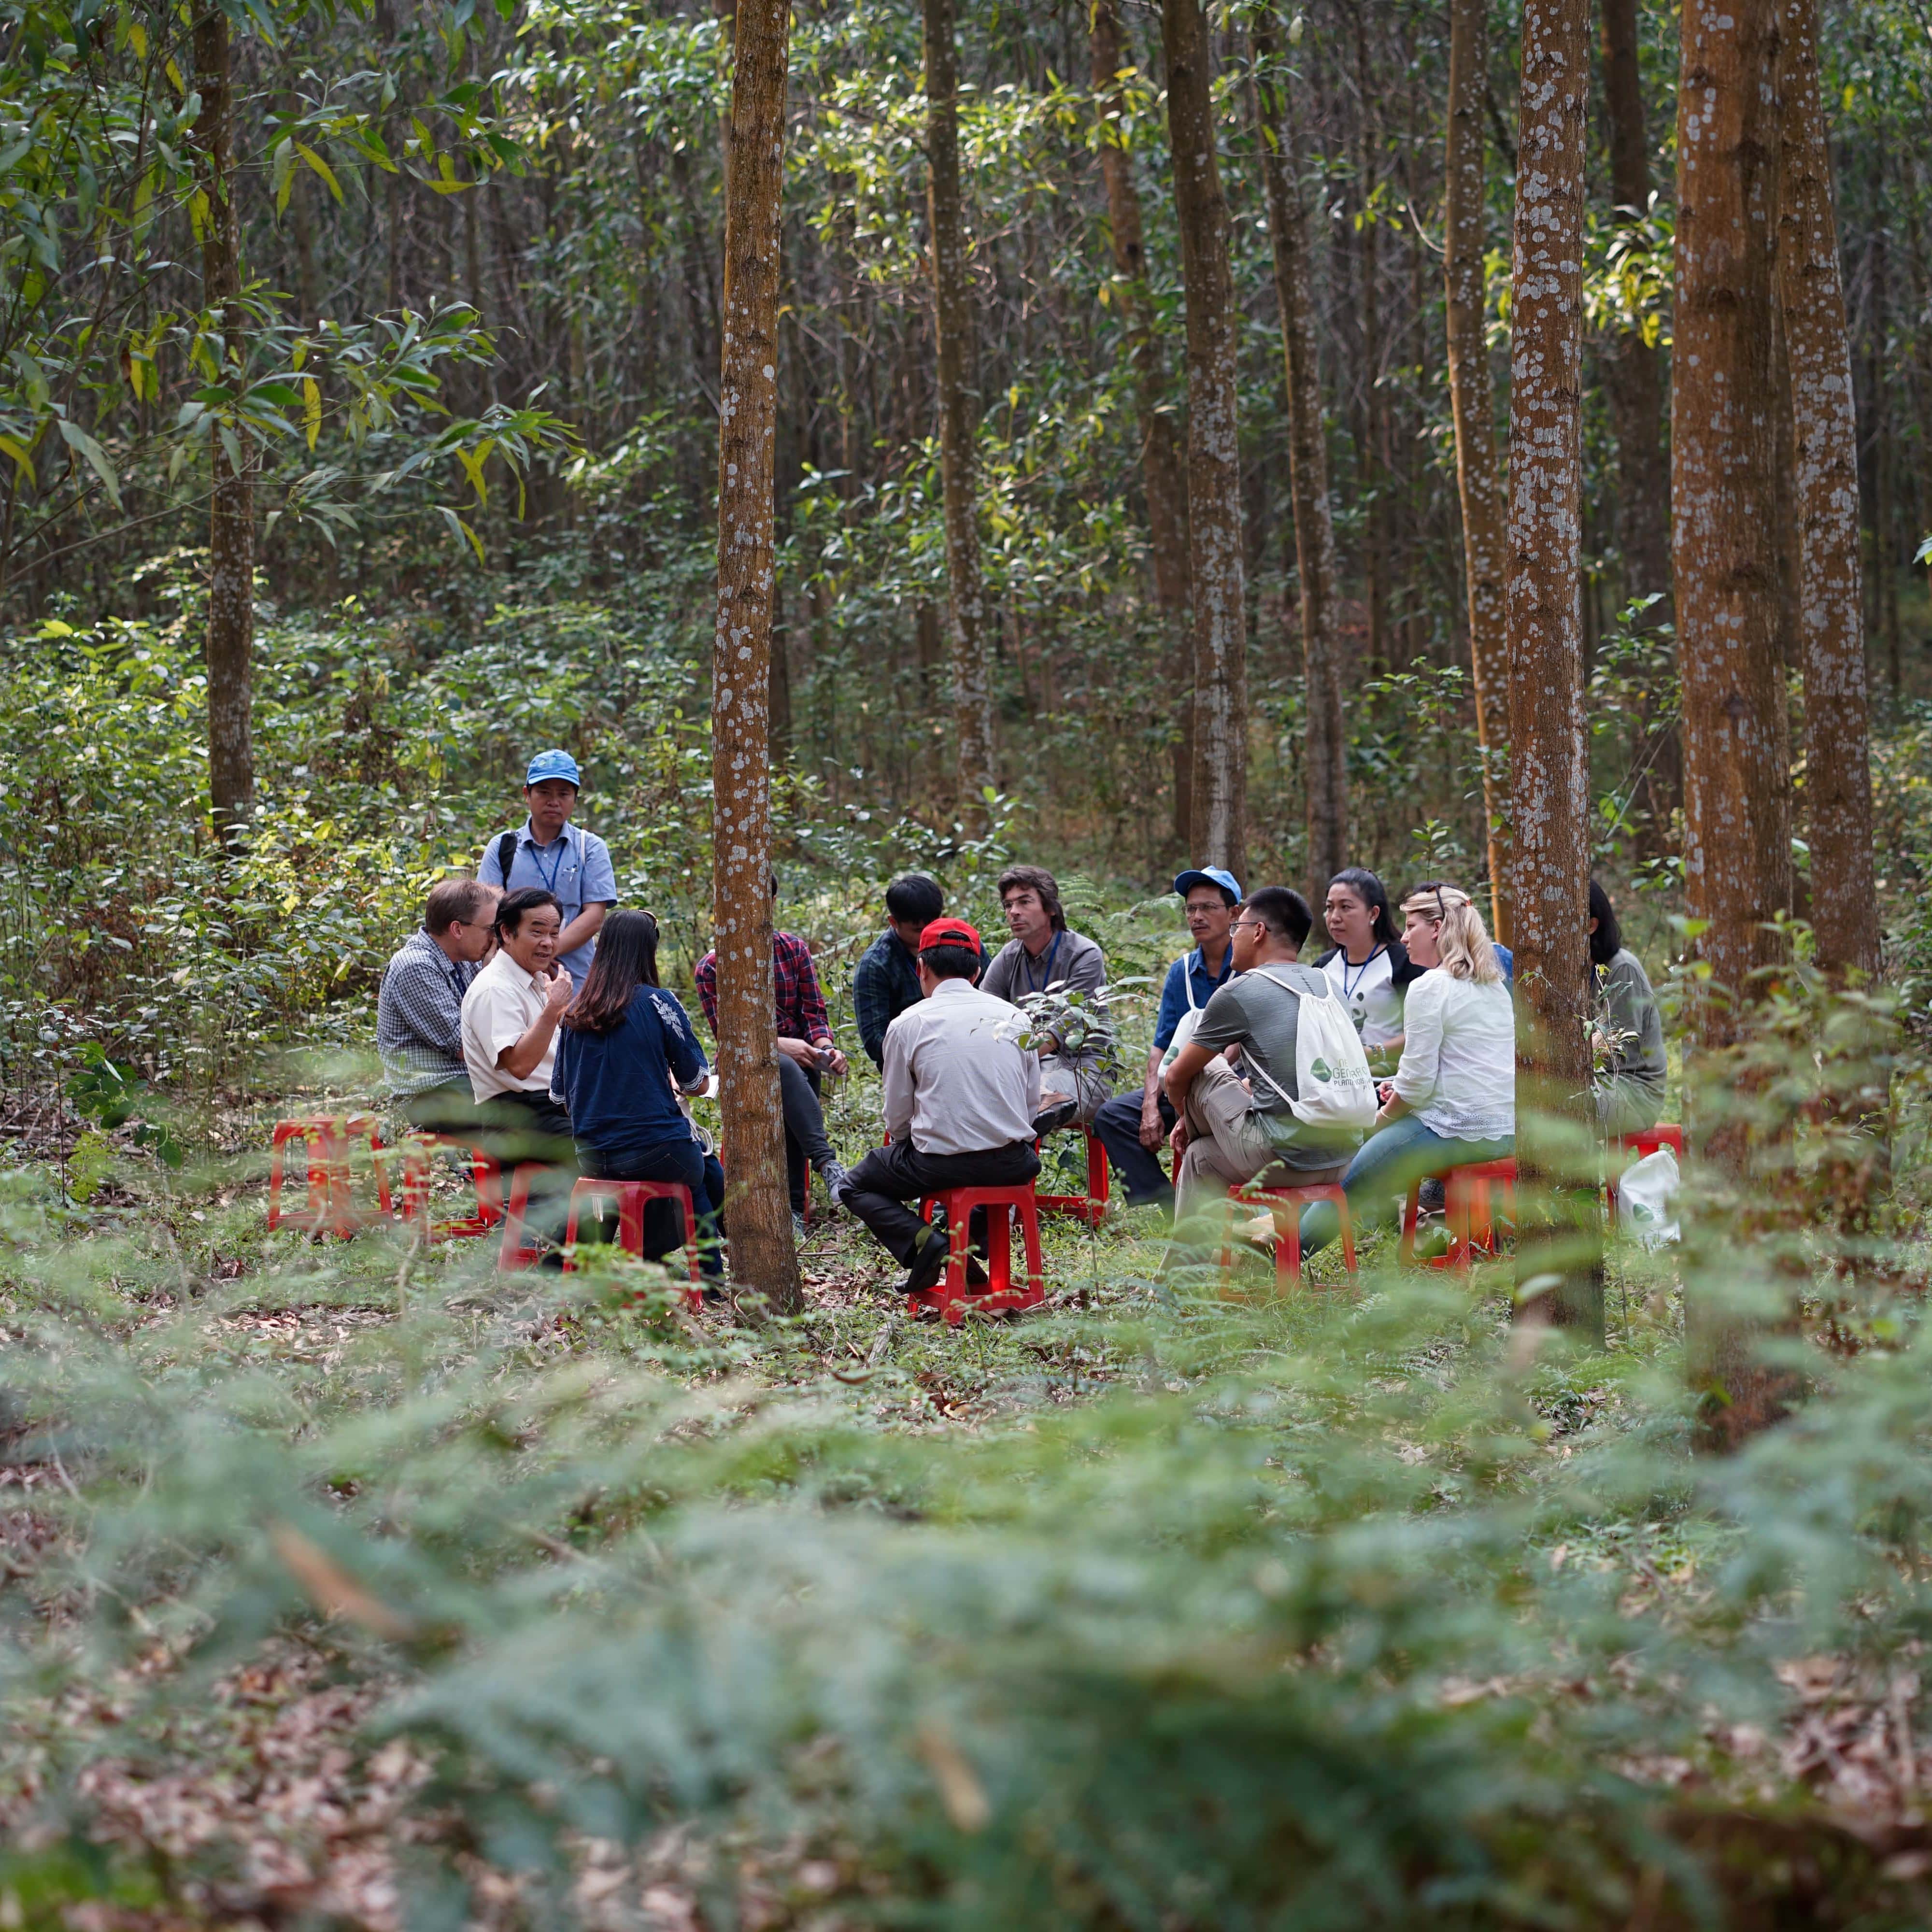 Viet Nam Central Annamites Landscape study tour